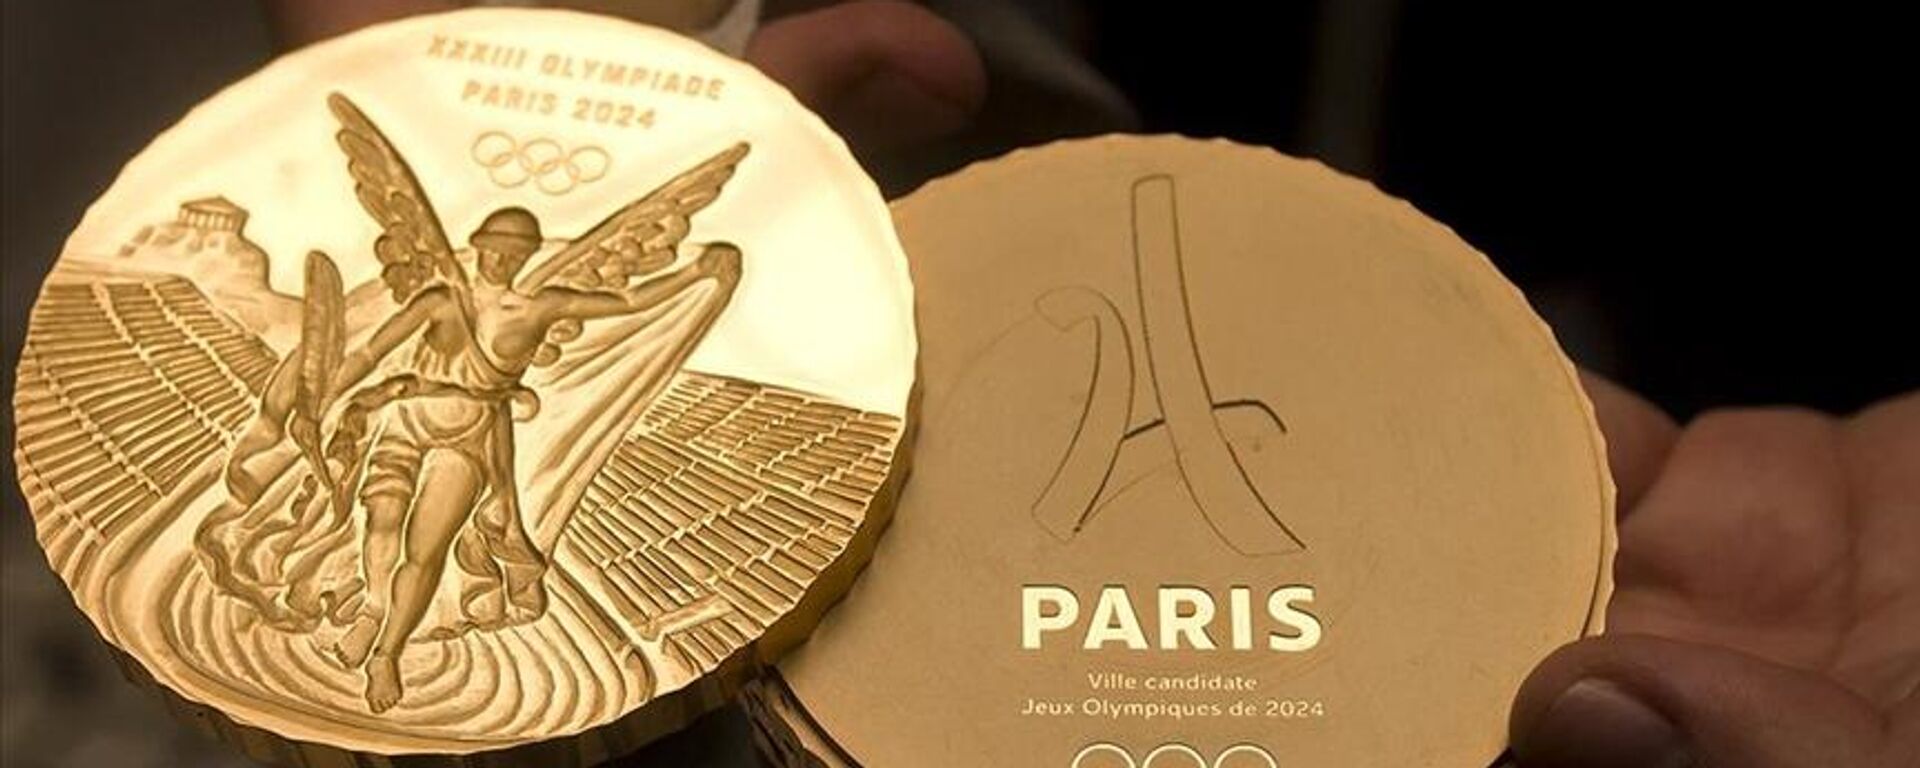 2024 Paris Olimpiyatları'nın işletme bütçesinin yüksek enflasyon nedeniyle yüzde 10 artması bekleniyor. - Sputnik Türkiye, 1920, 22.11.2022